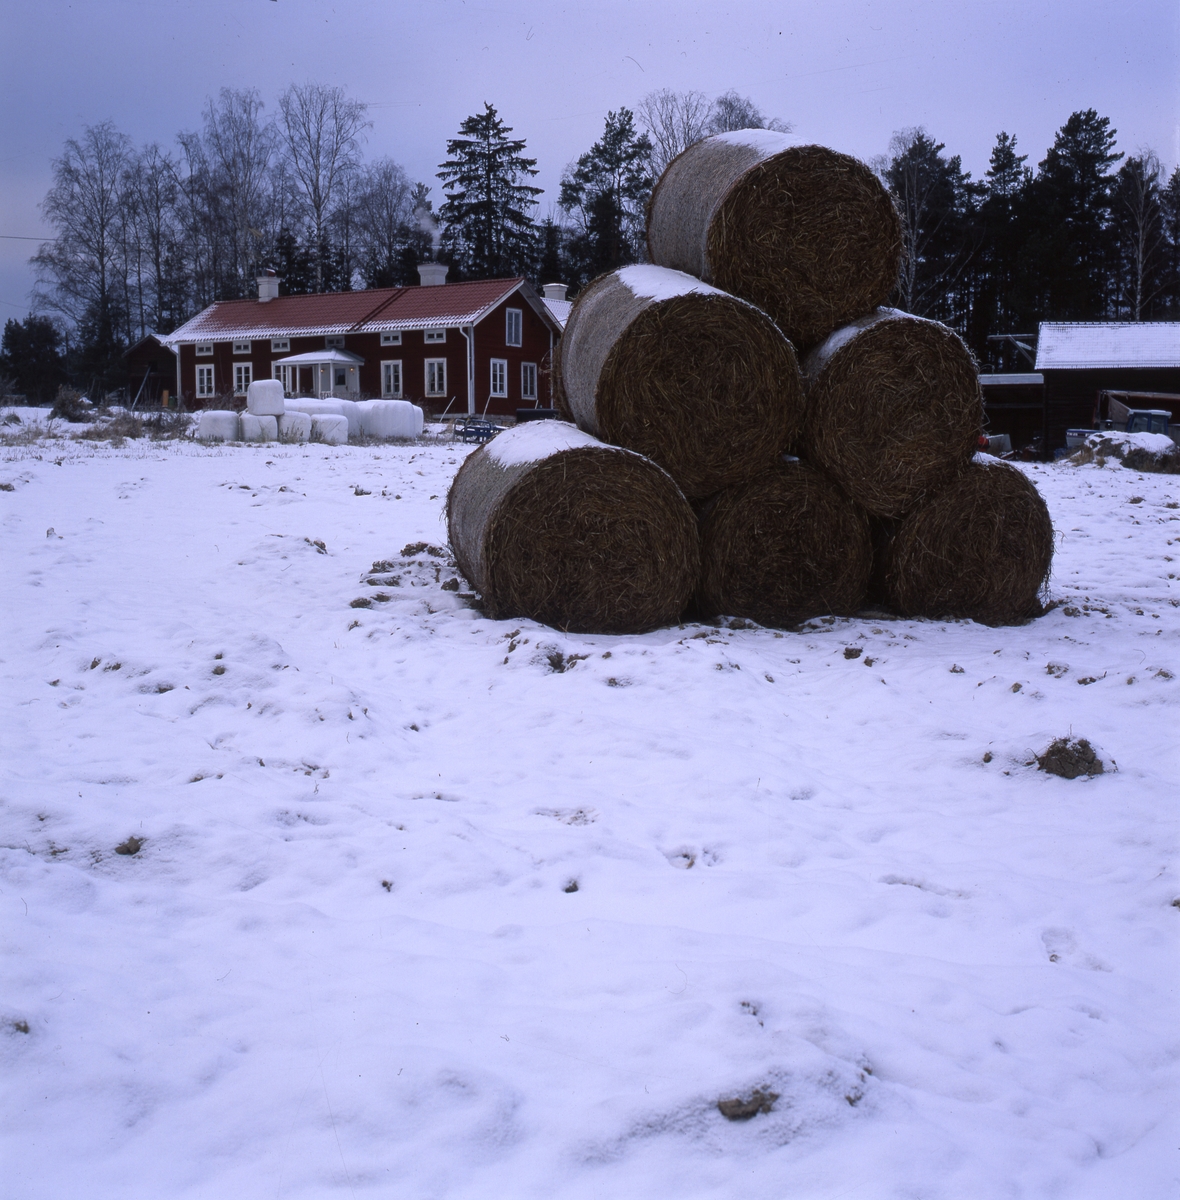 I snön framför en gård ligger höbalar och vita ensilagebalar.